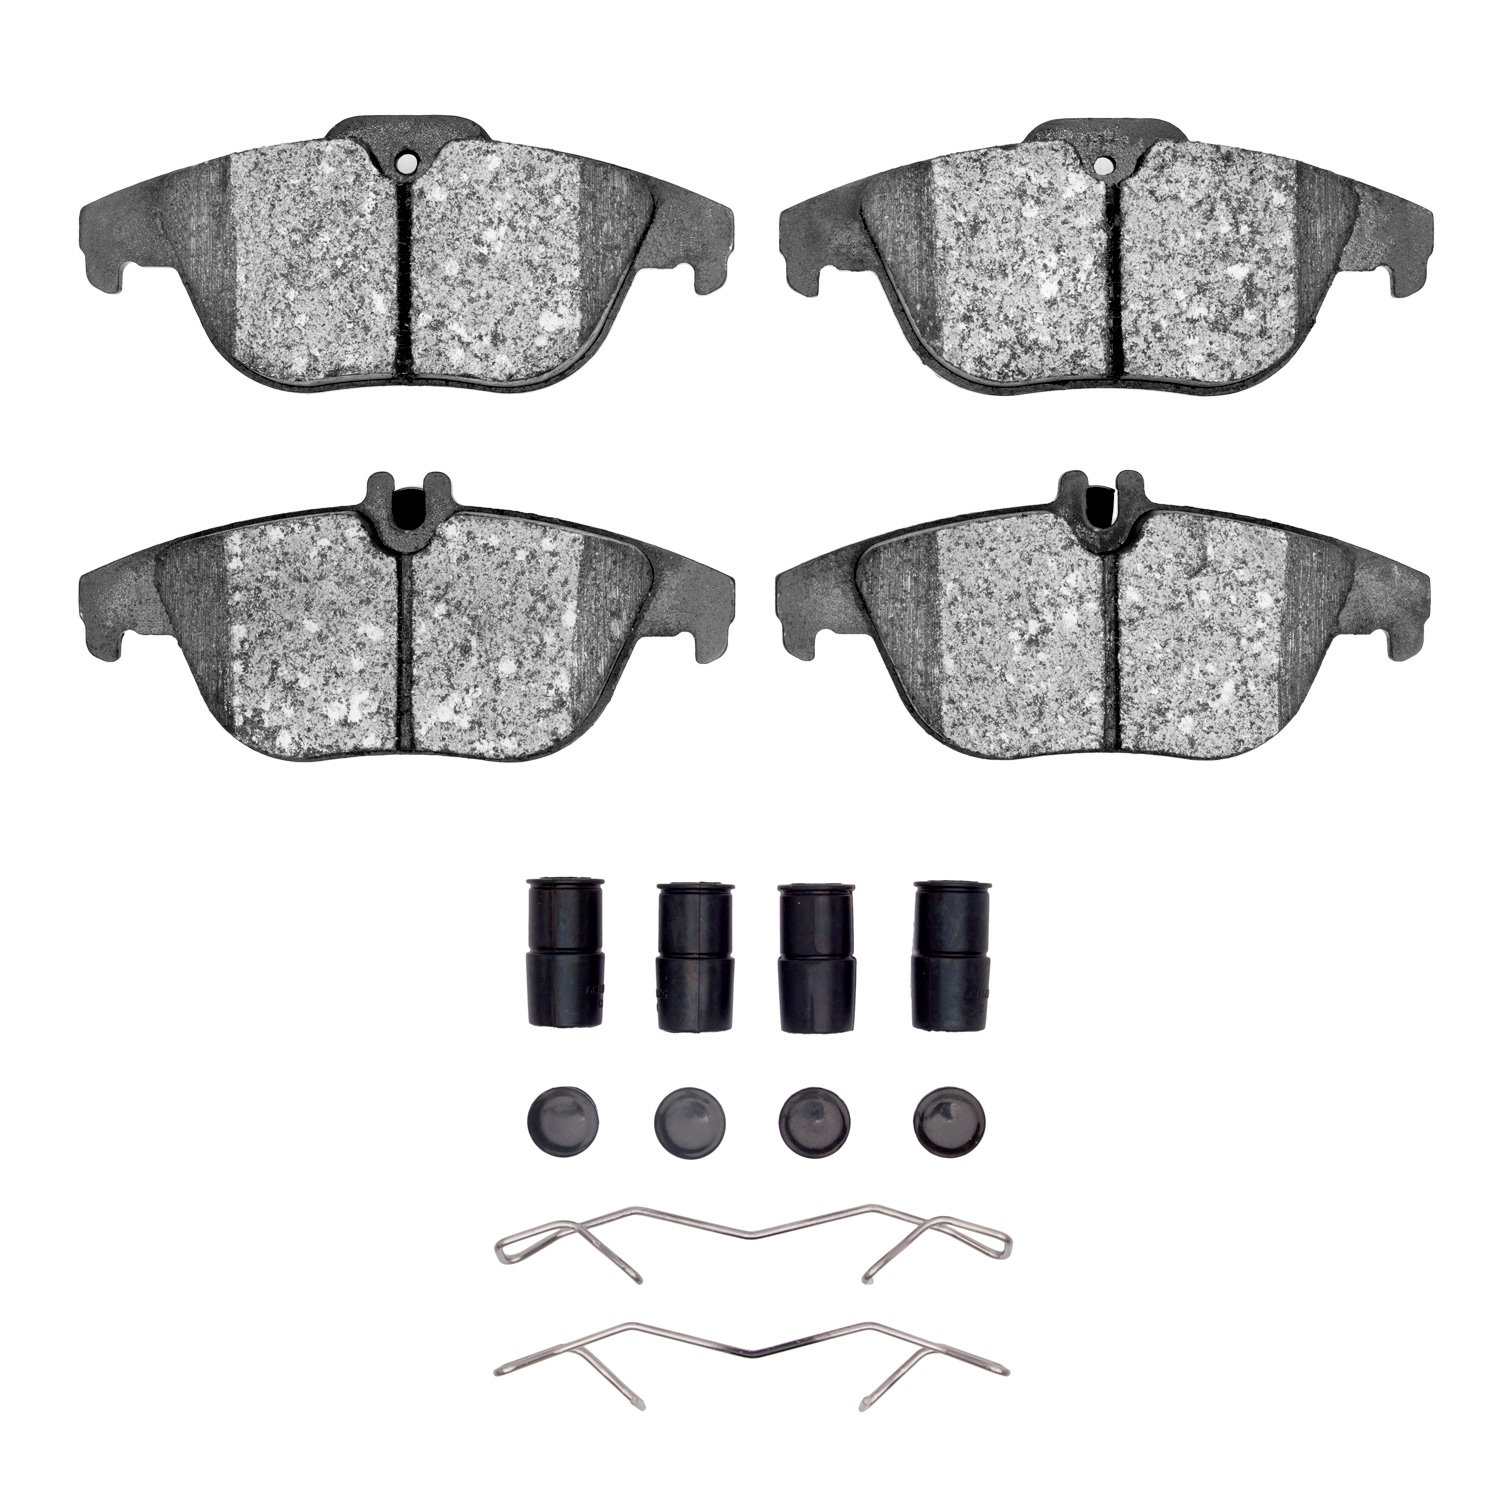 1600-1341-11 5000 Euro Ceramic Brake Pads & Hardware Kit, 2009-2015 Mercedes-Benz, Position: Rear